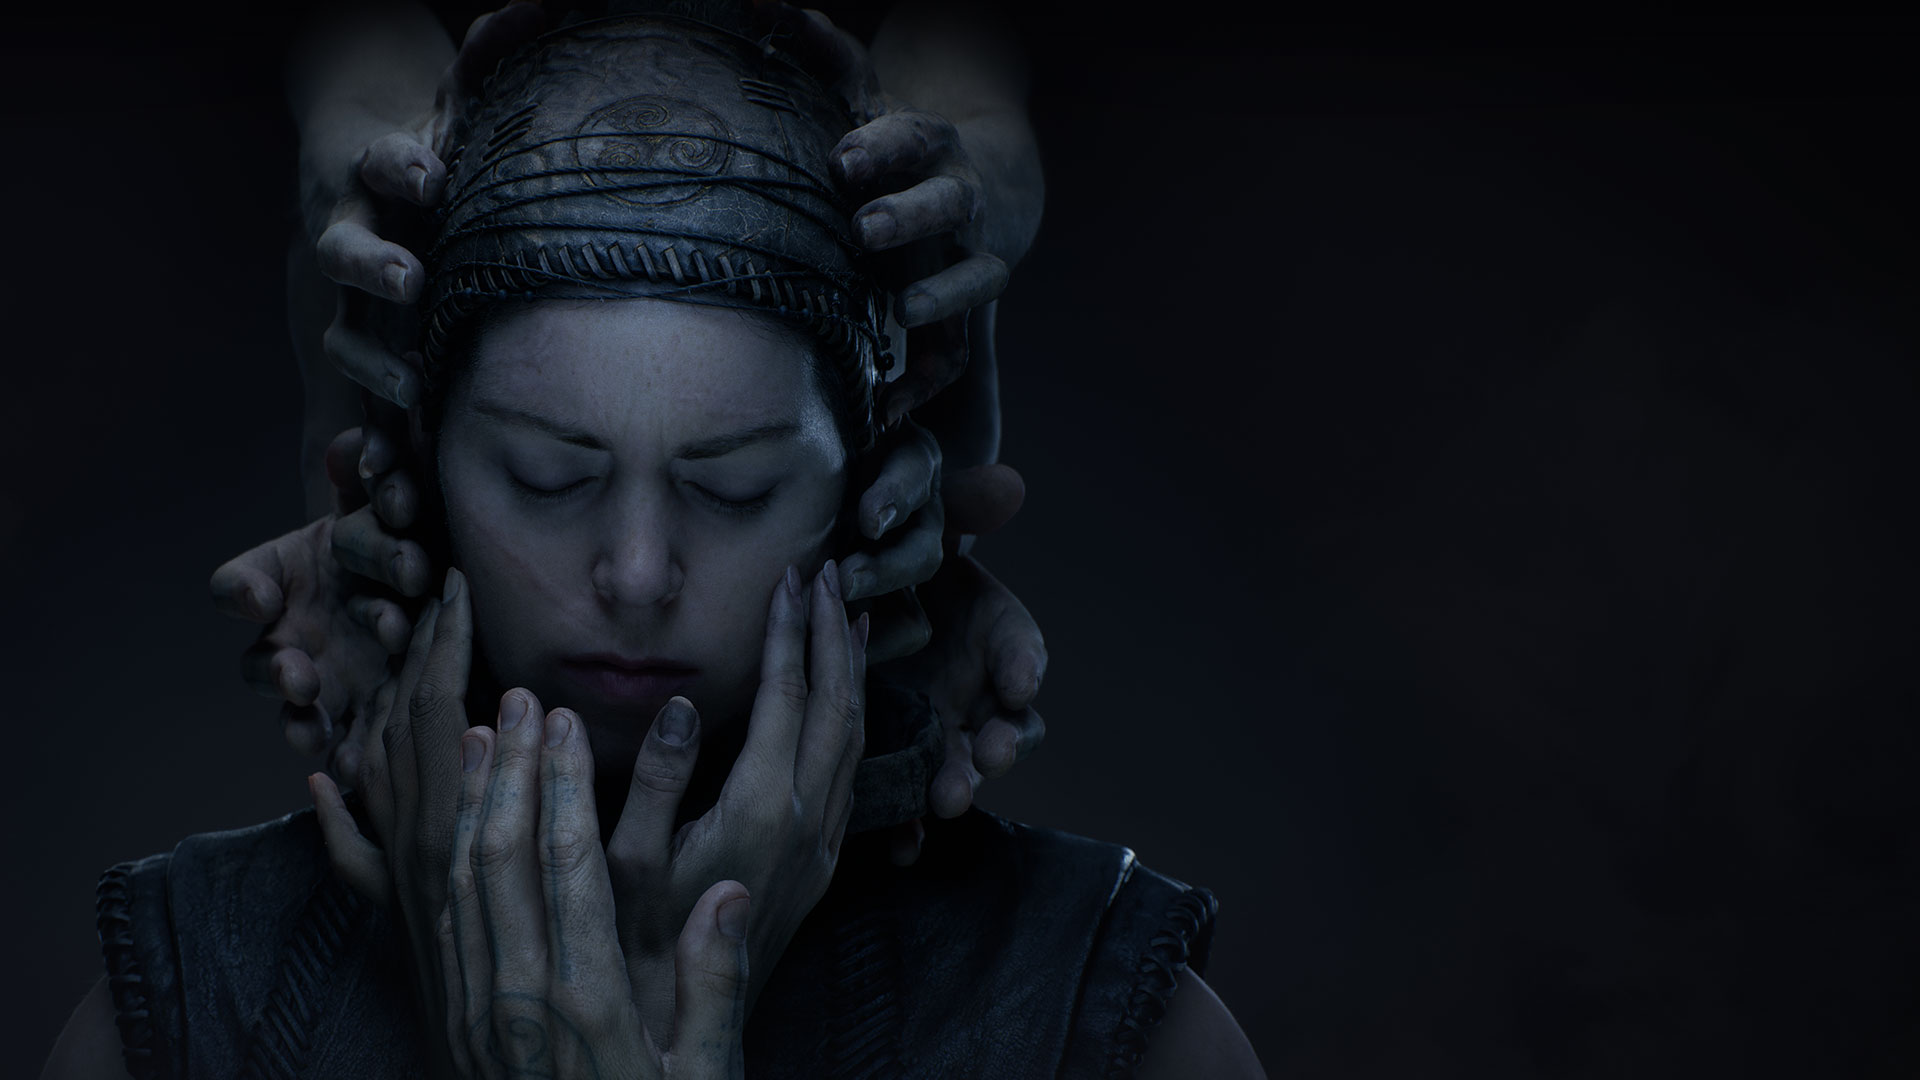 En kvinne i håndlagde klær av lær lukker øynene i mørket mens hender strekker seg for å berøre ansiktet hennes.